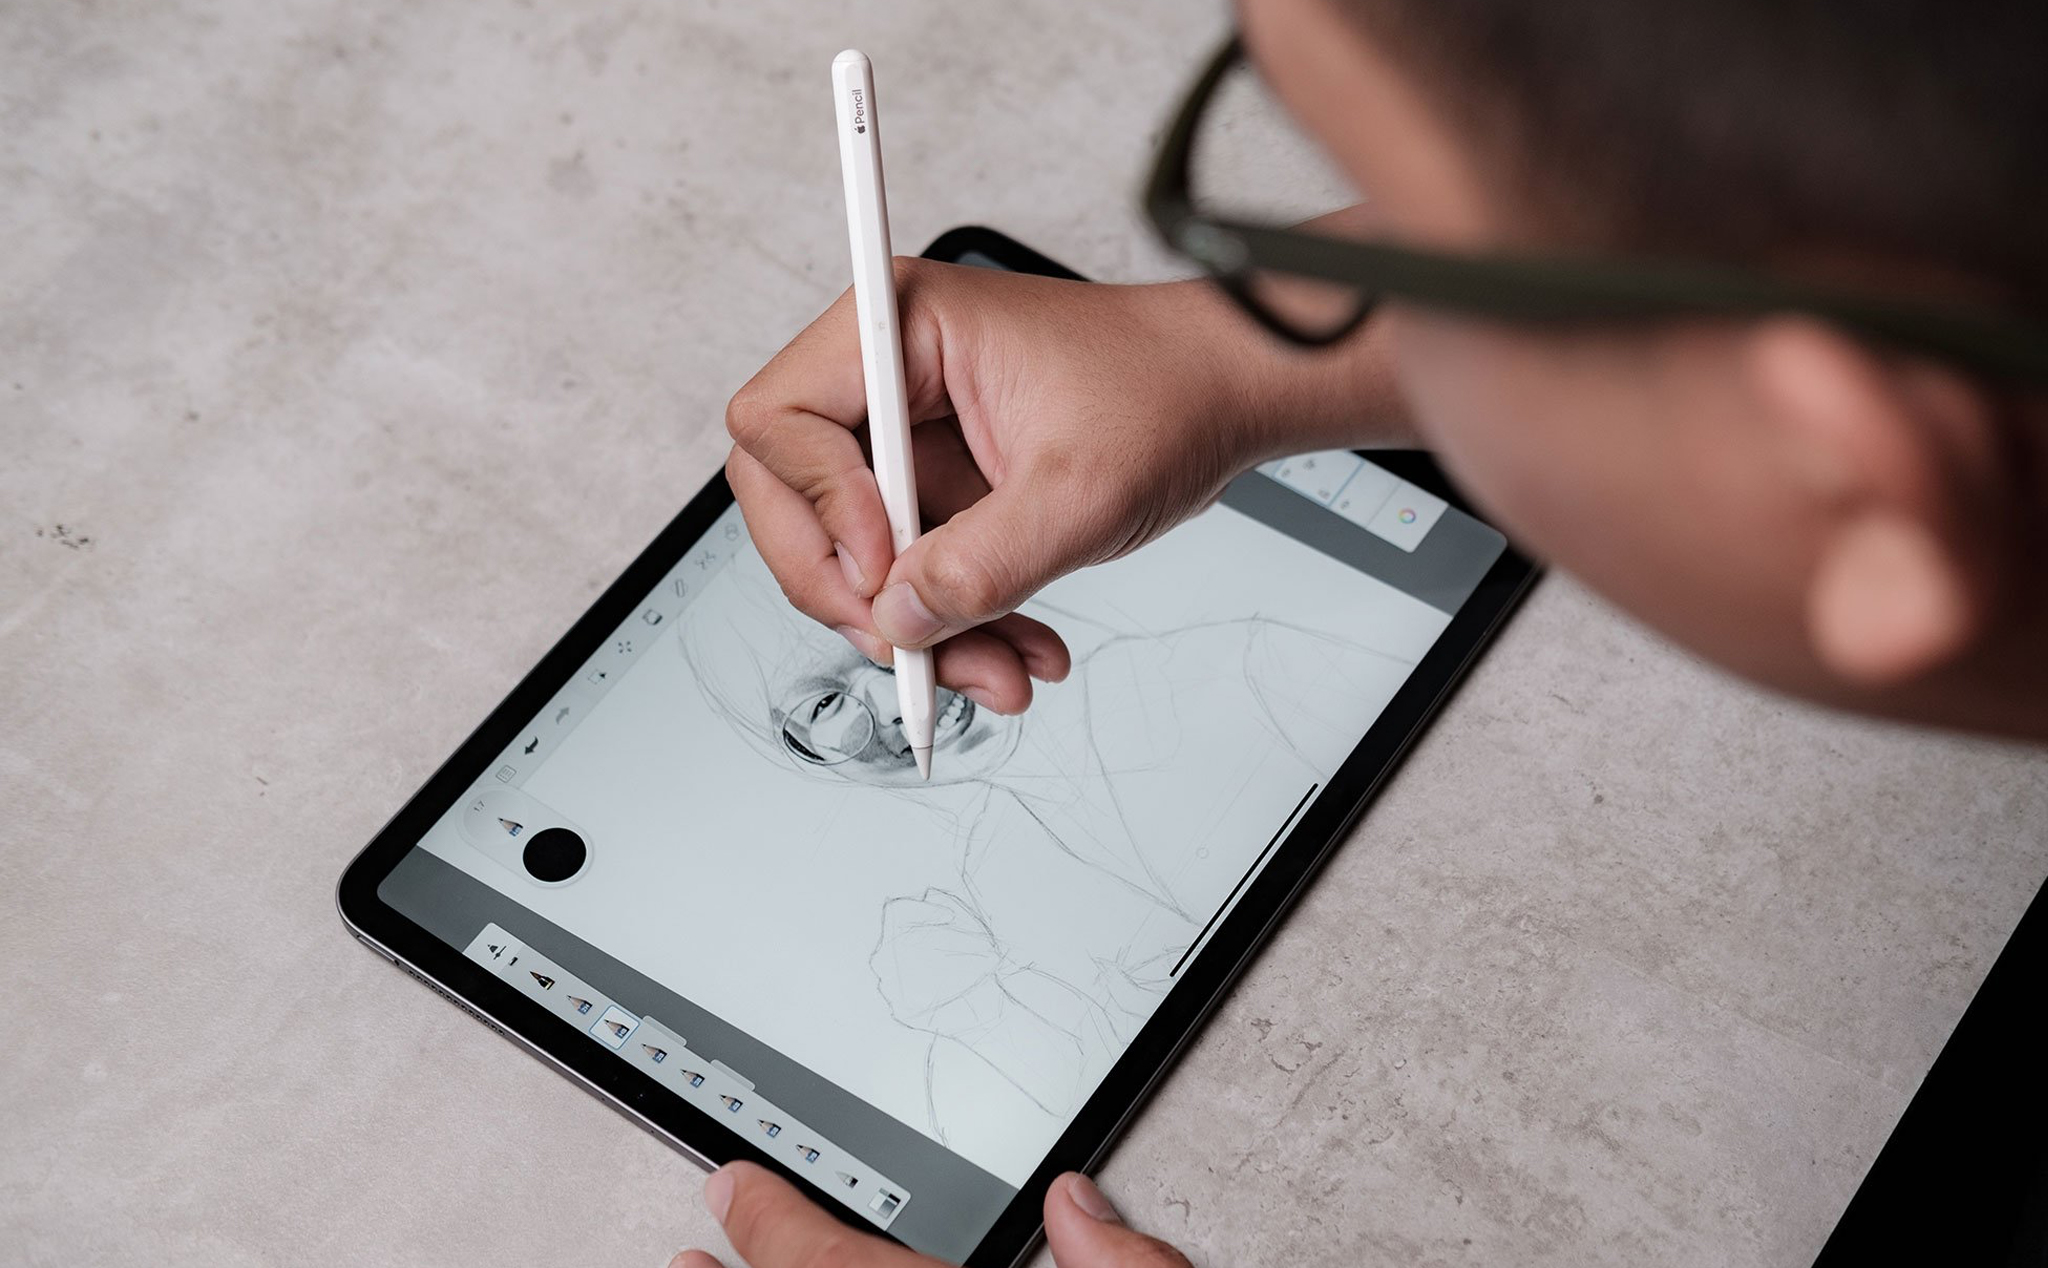 Để trải nghiệm vẽ trên iPad một cách hiệu quả nhất, Apple Pencil là một công cụ không thể thiếu. Với khả năng cảm ứng ánh sáng và áp lực, bạn có thể vẽ với độ chính xác cao hơn, tạo ra những tác phẩm nghệ thuật ấn tượng hơn. Bắt đầu cùng Apple Pencil và iPad để khám phá tiềm năng của bản thân và trải nghiệm công nghệ vẽ thông minh.